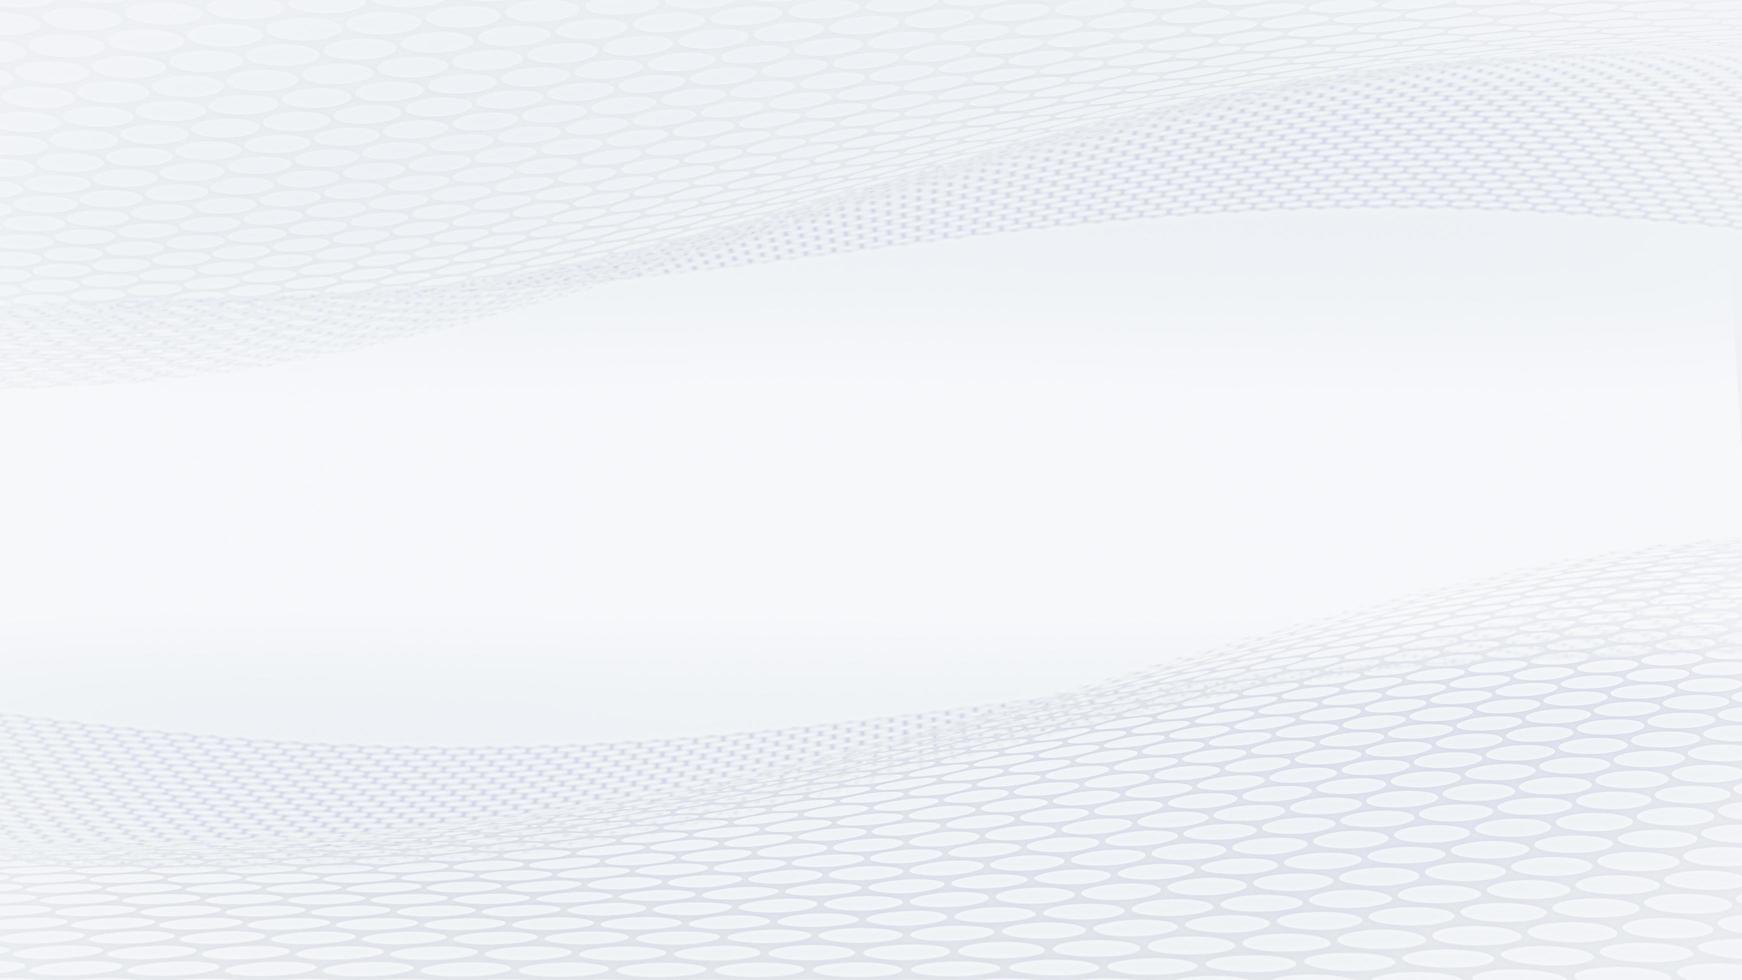 Fondo y papel tapiz de arte de puntos de semitono brillante moderno gris blanco elegante. diseño de negocios representación 3d foto